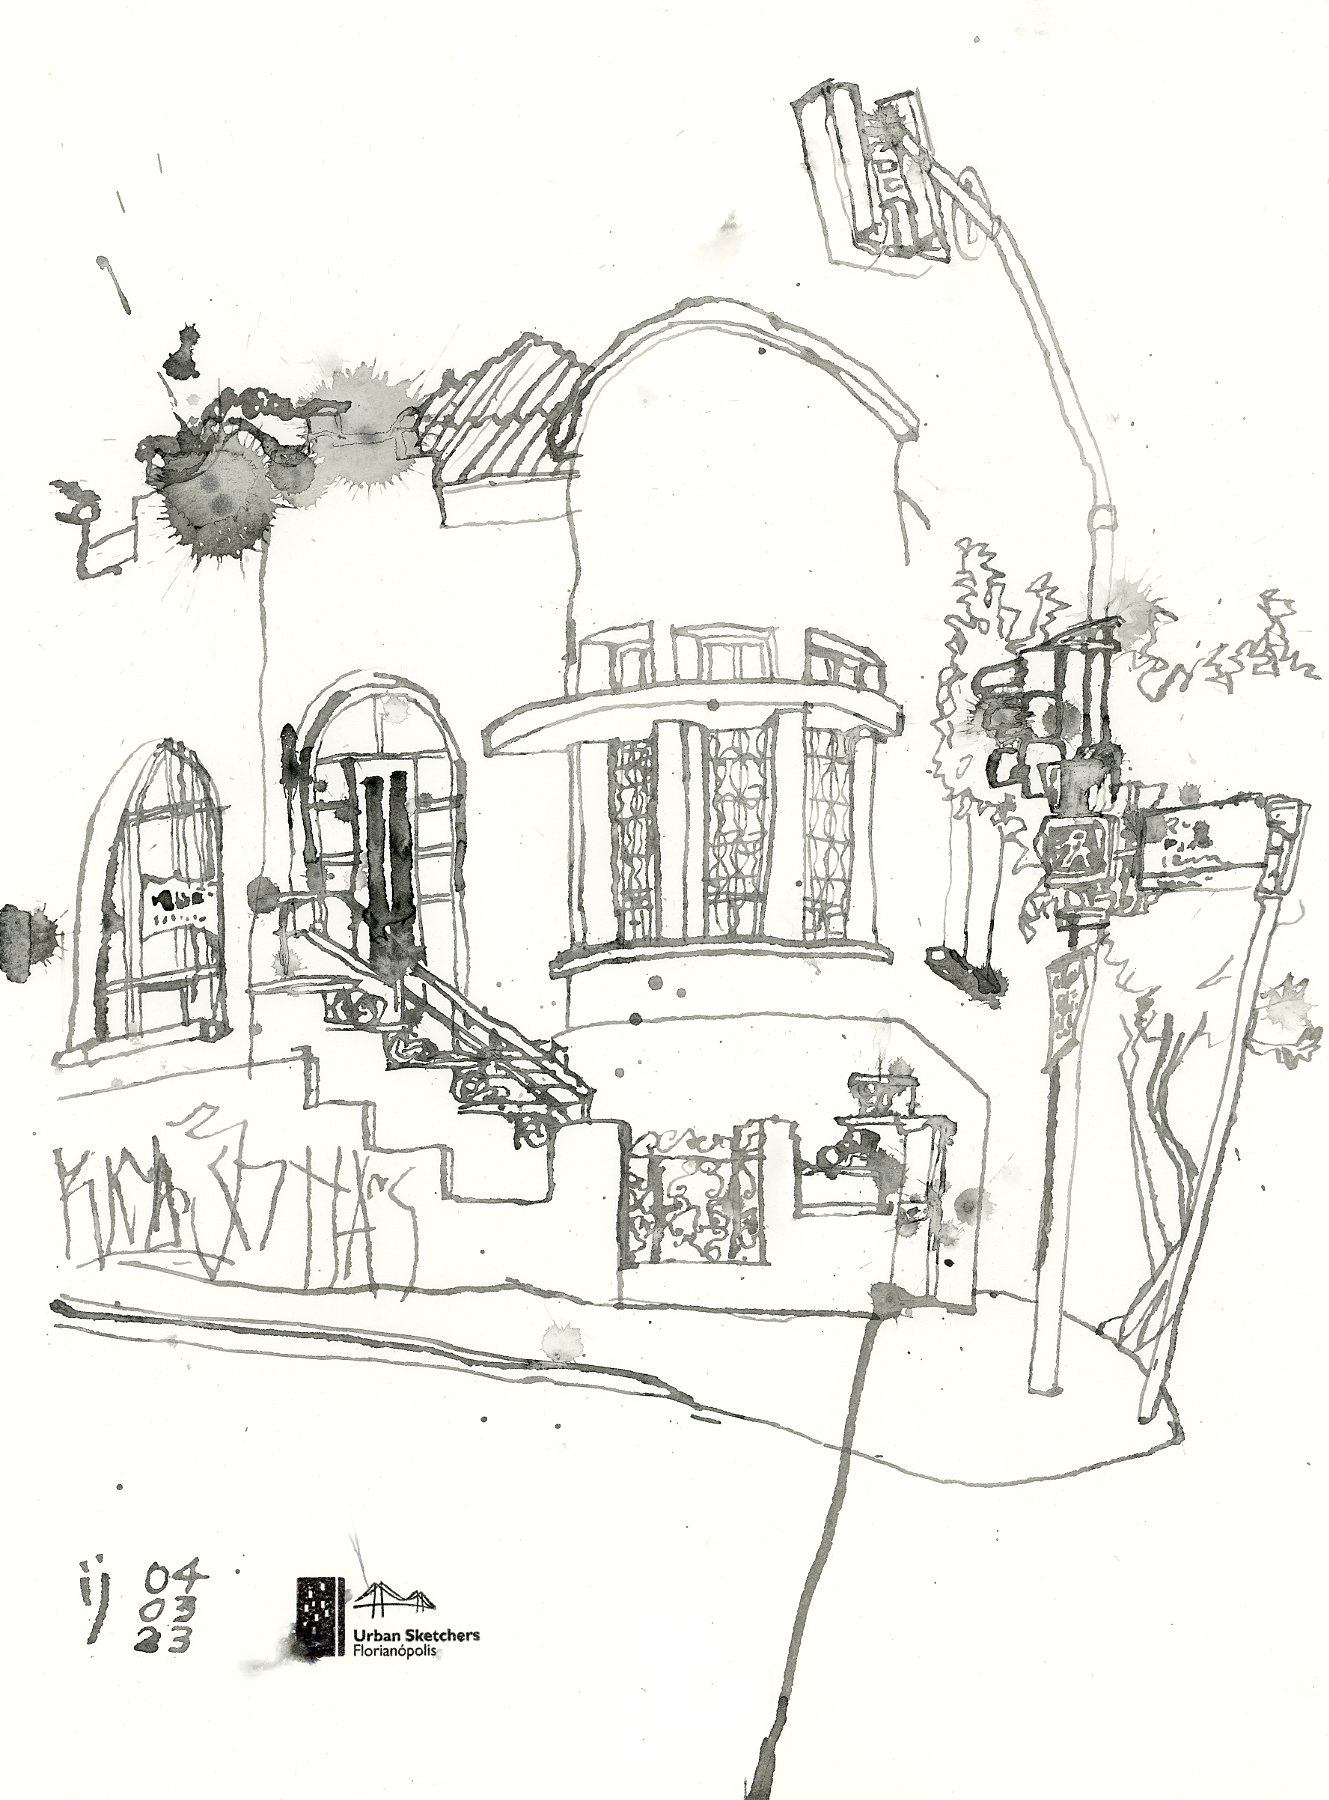 Desenho com traços cinzas da fachada de uma casa com o semáforo em primeiro plano. Há manchas de respingo de tinta por todo o papel.